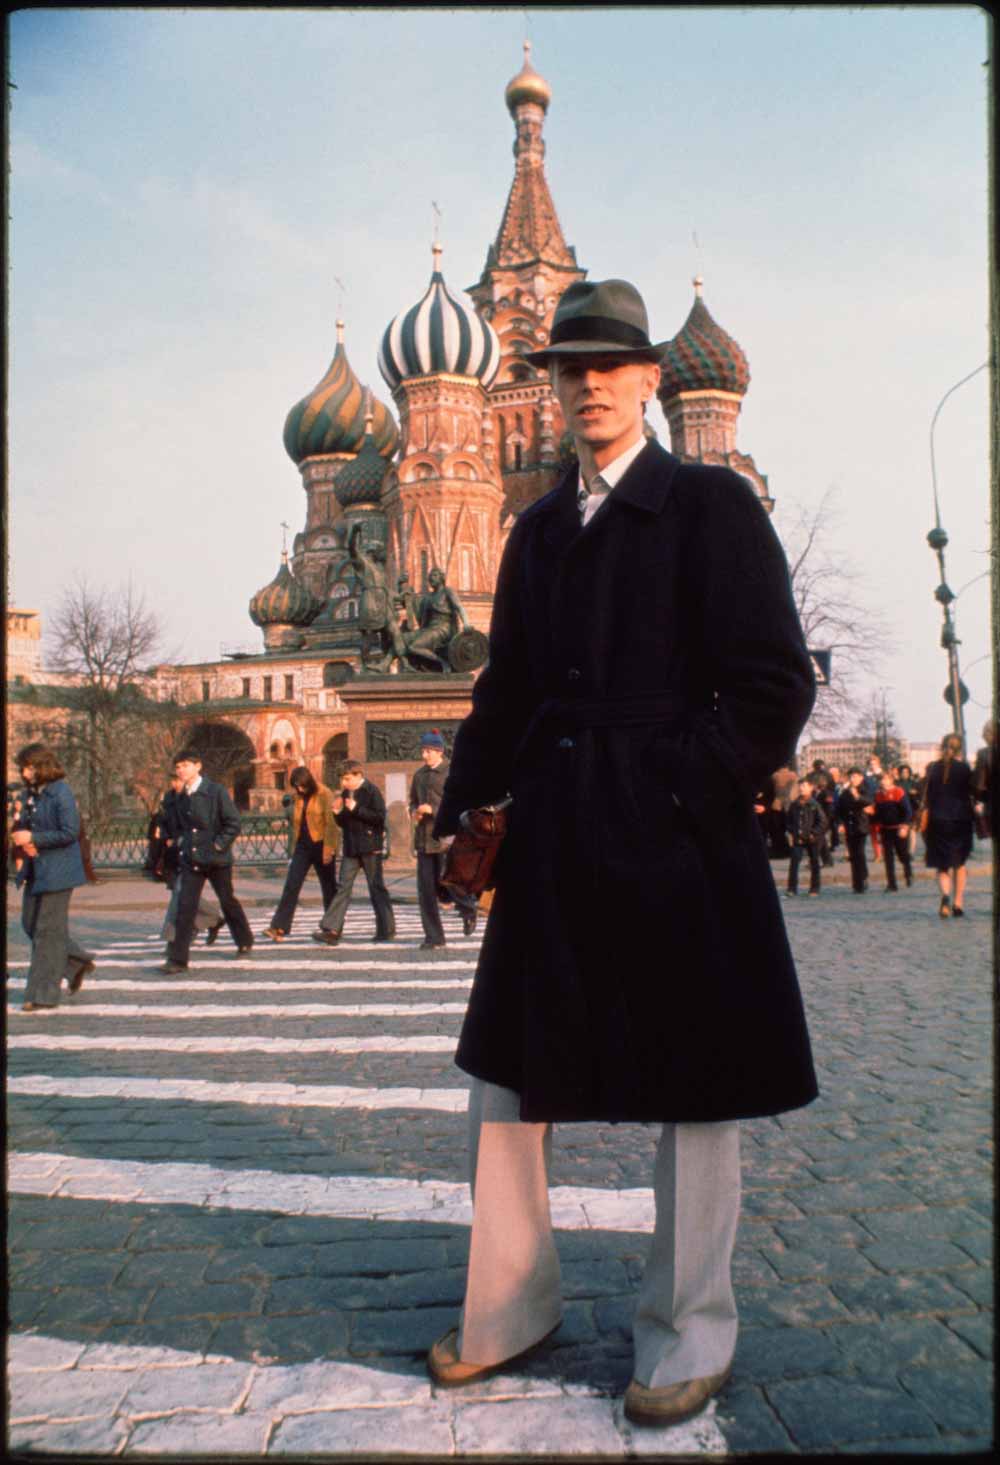 Bowie passeggia per la Piazza Rossa di Mosca (1976)